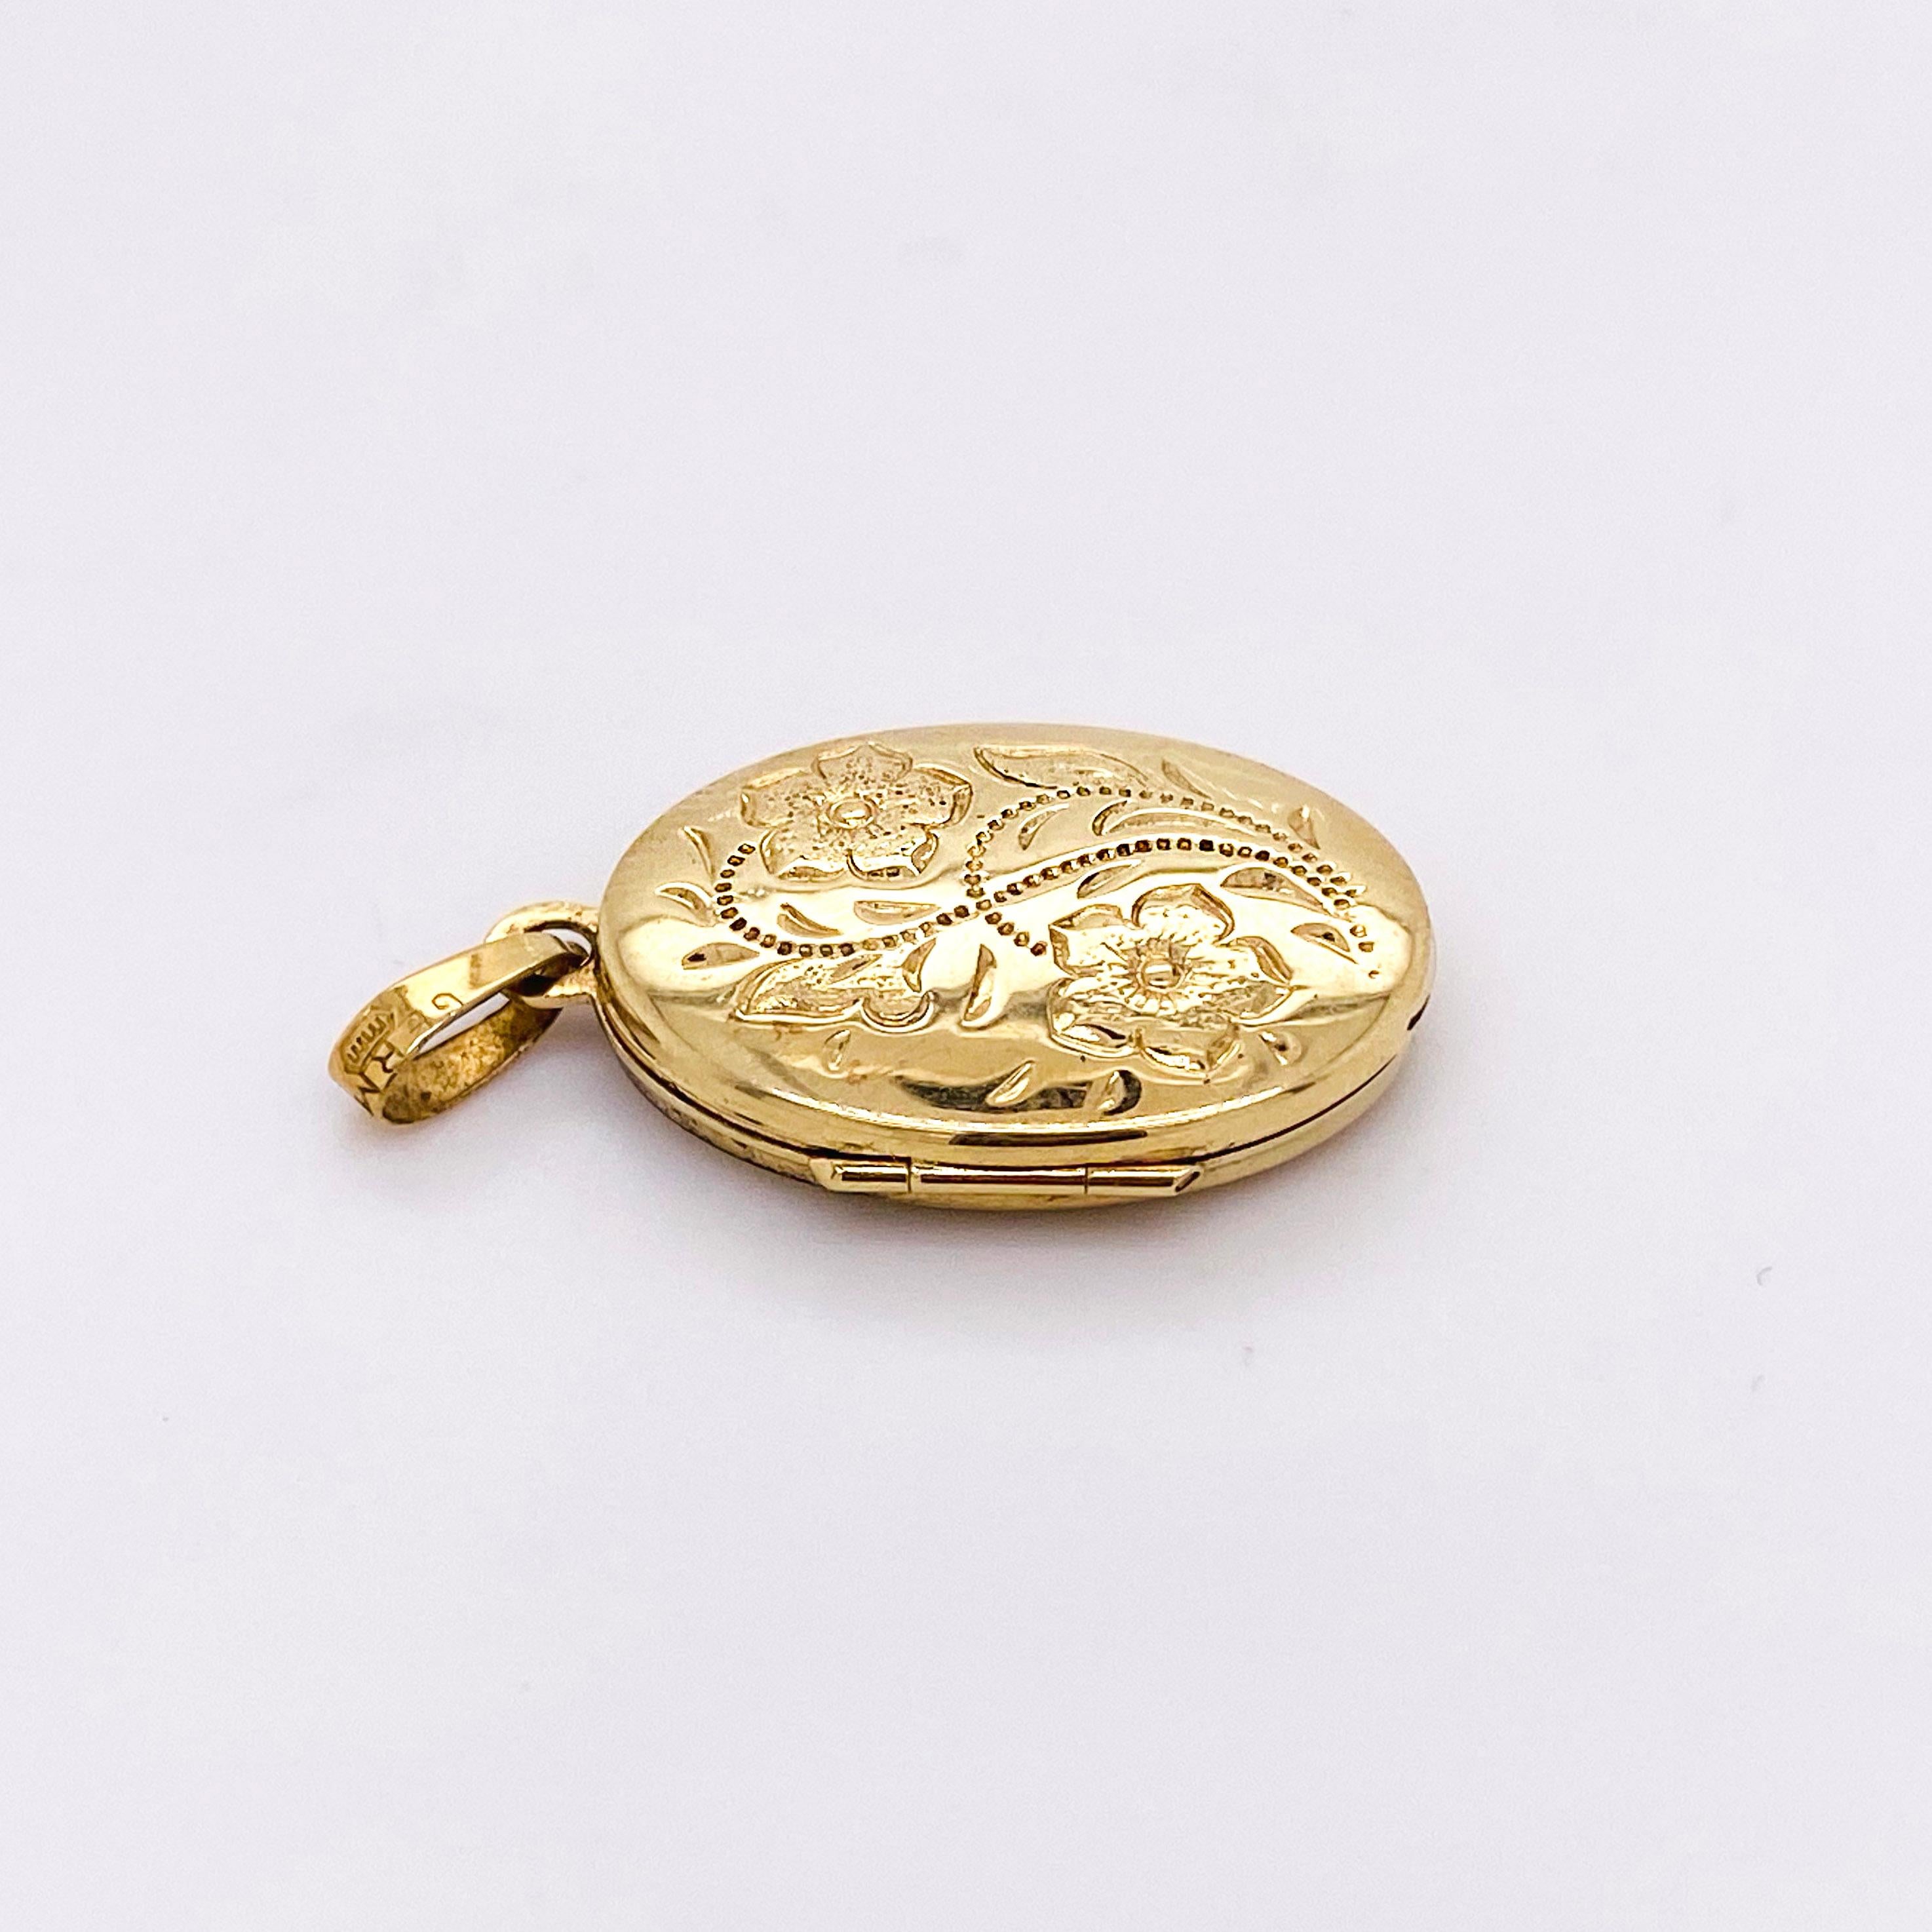 Modern Gold Flower Locket, Vintage Inspired 14 Karat Gold Floral Oval Engraved Necklace